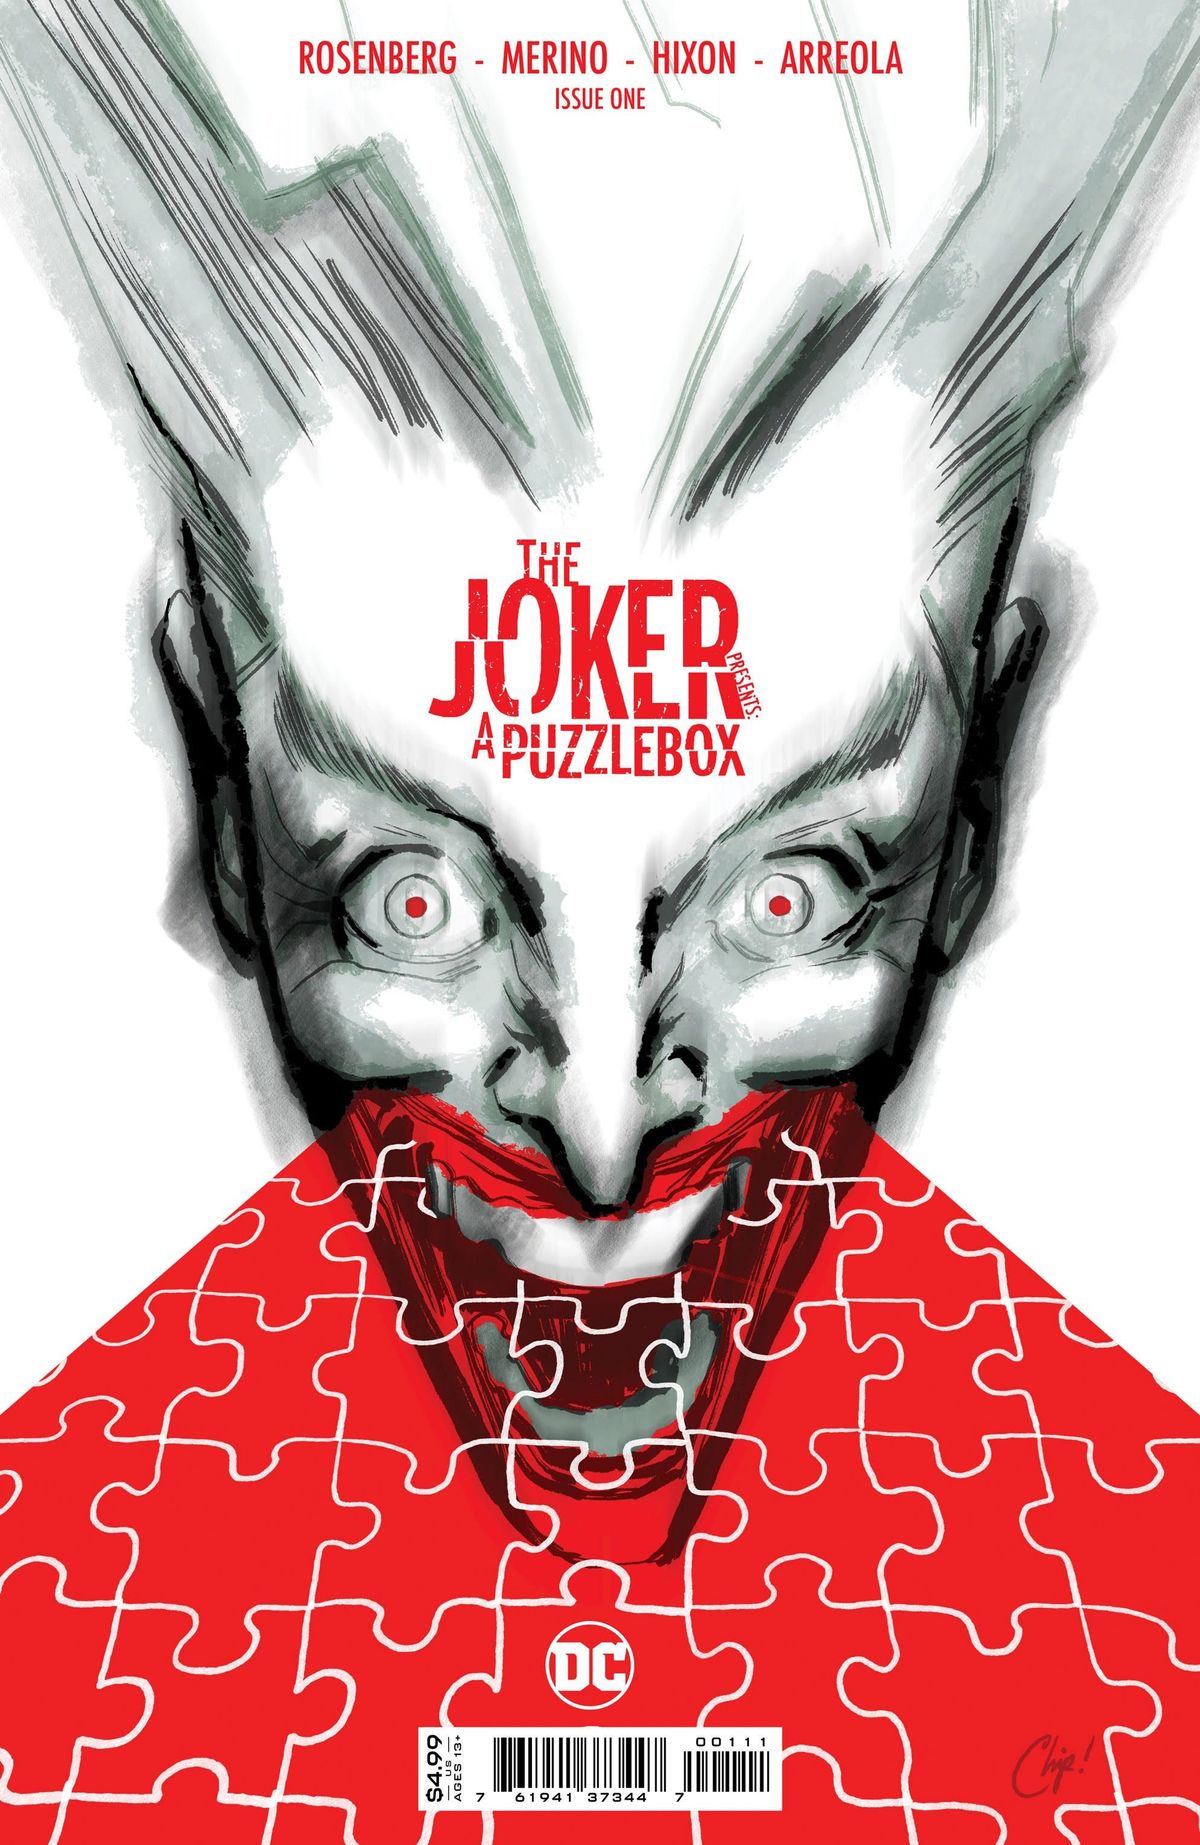 DC Mengumumkan Seri Misteri Pembunuhan dengan Joker sebagai Saksi Bintang